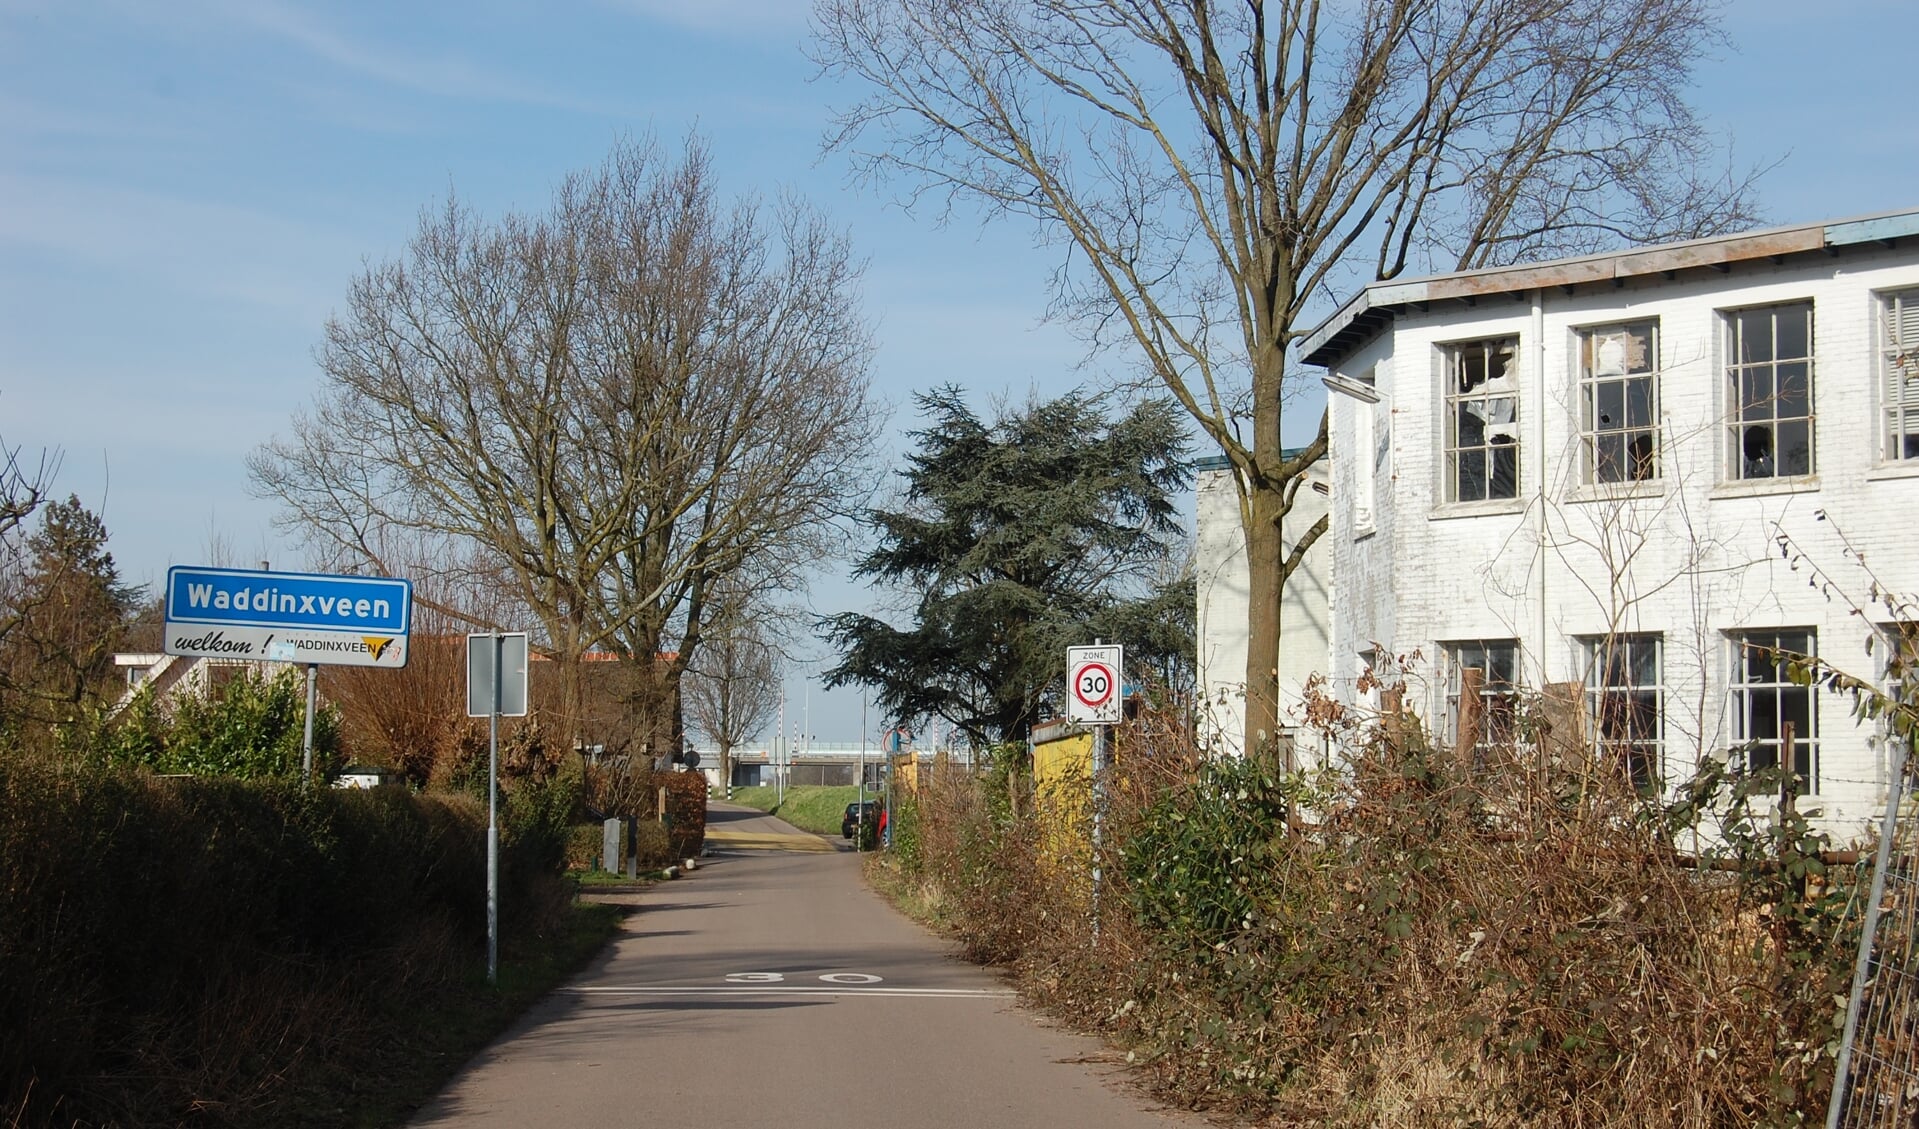 De voormalige verffabriek Boonstoppel hield in 2000 op te bestaan.